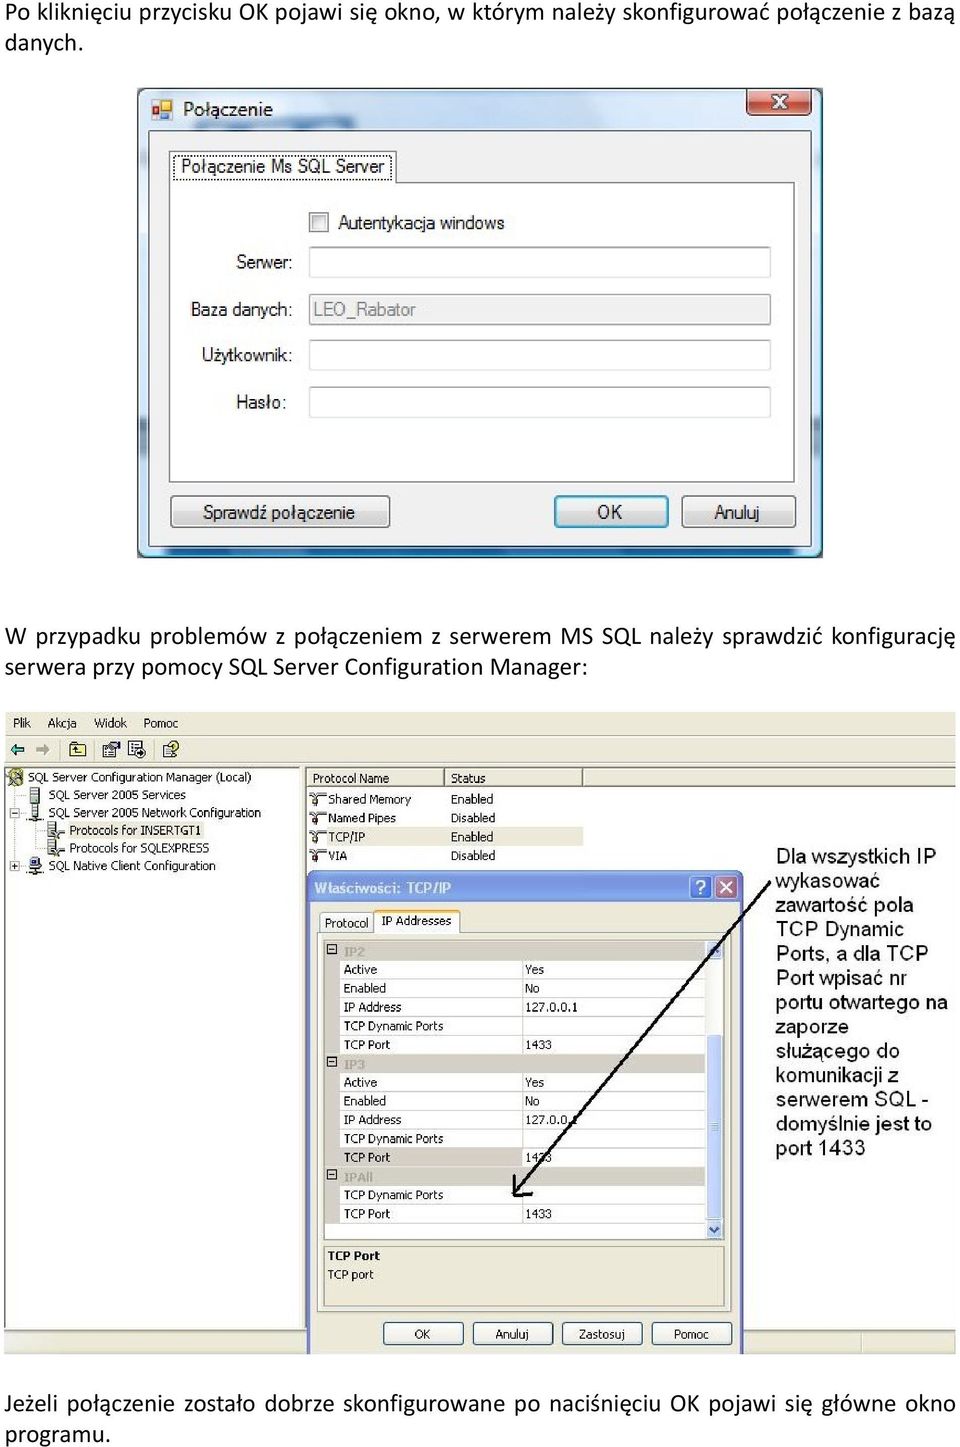 W przypadku problemów z połączeniem z serwerem MS SQL należy sprawdzić konfigurację